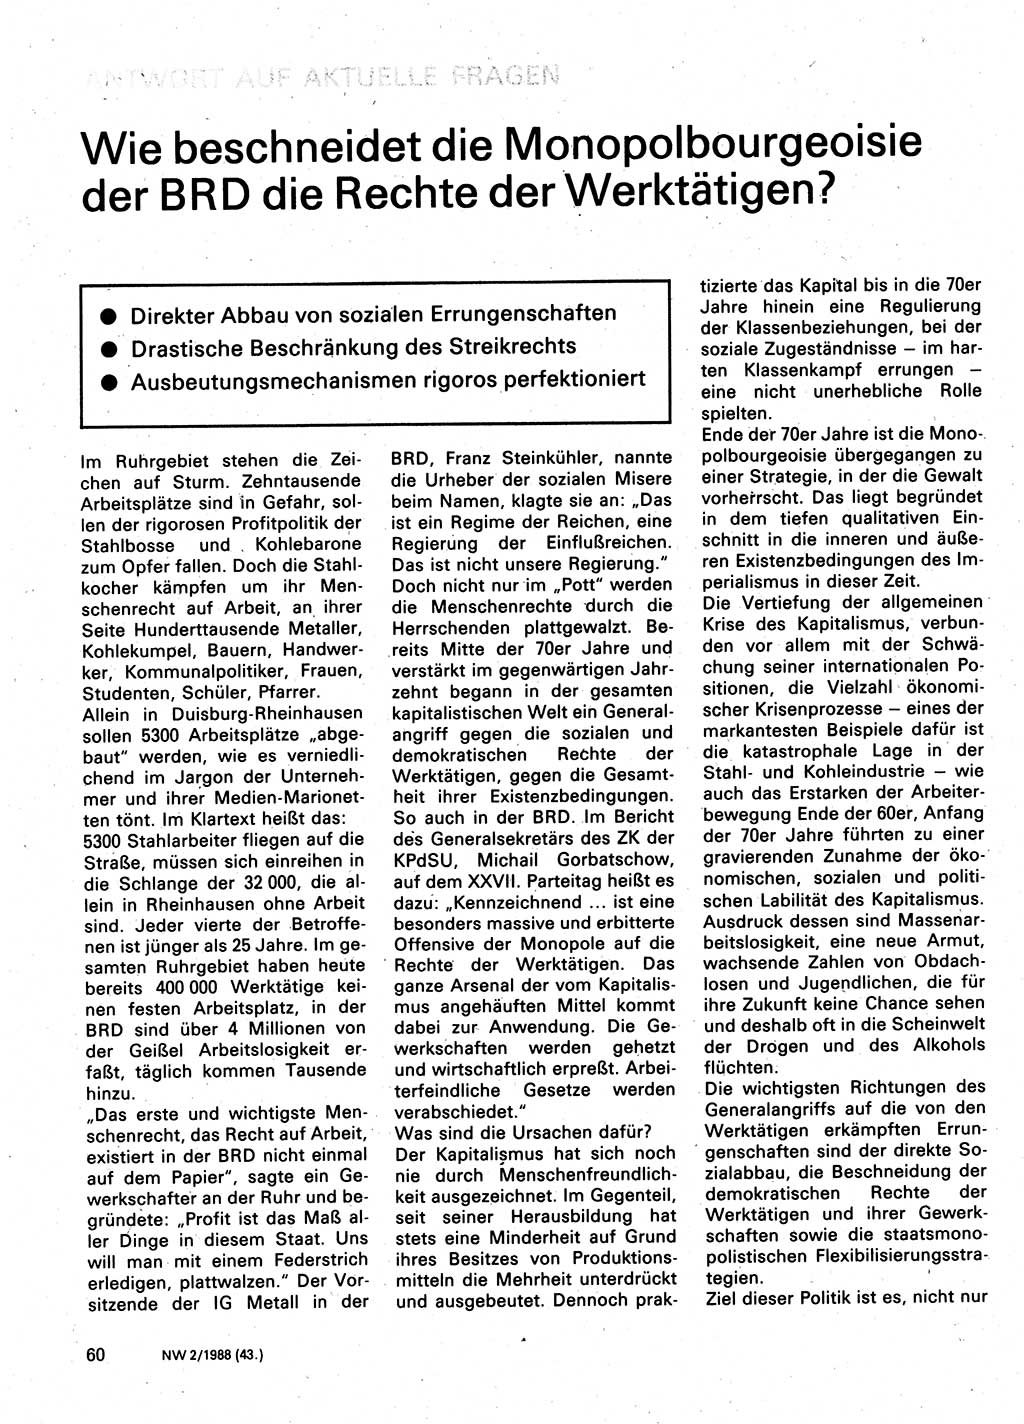 Neuer Weg (NW), Organ des Zentralkomitees (ZK) der SED (Sozialistische Einheitspartei Deutschlands) für Fragen des Parteilebens, 43. Jahrgang [Deutsche Demokratische Republik (DDR)] 1988, Seite 60 (NW ZK SED DDR 1988, S. 60)